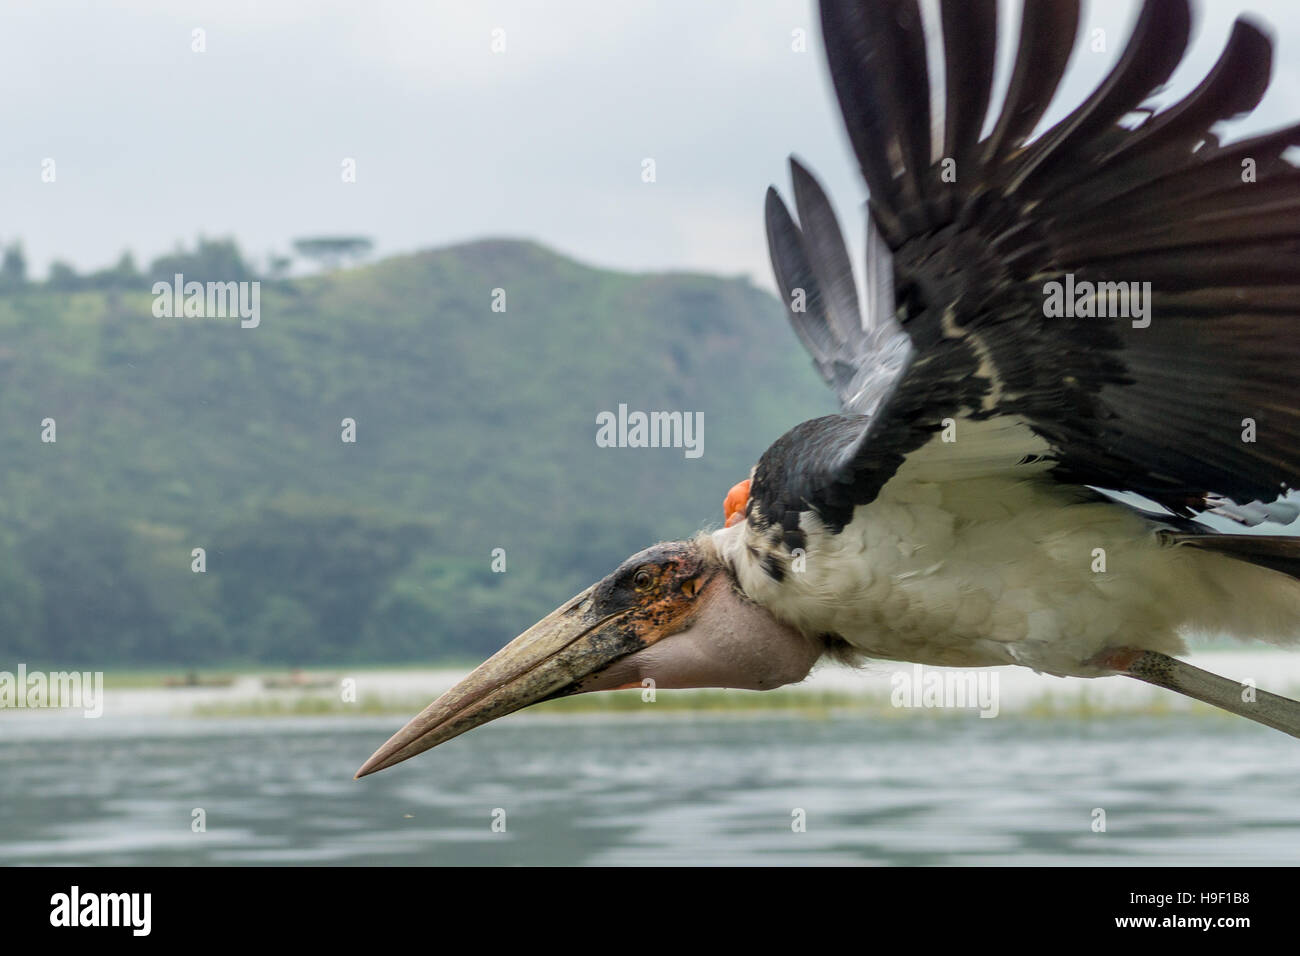 Una cigüeña Marabú ave carroñera a mediados de vuelo sobre el lago Hawassa Foto de stock